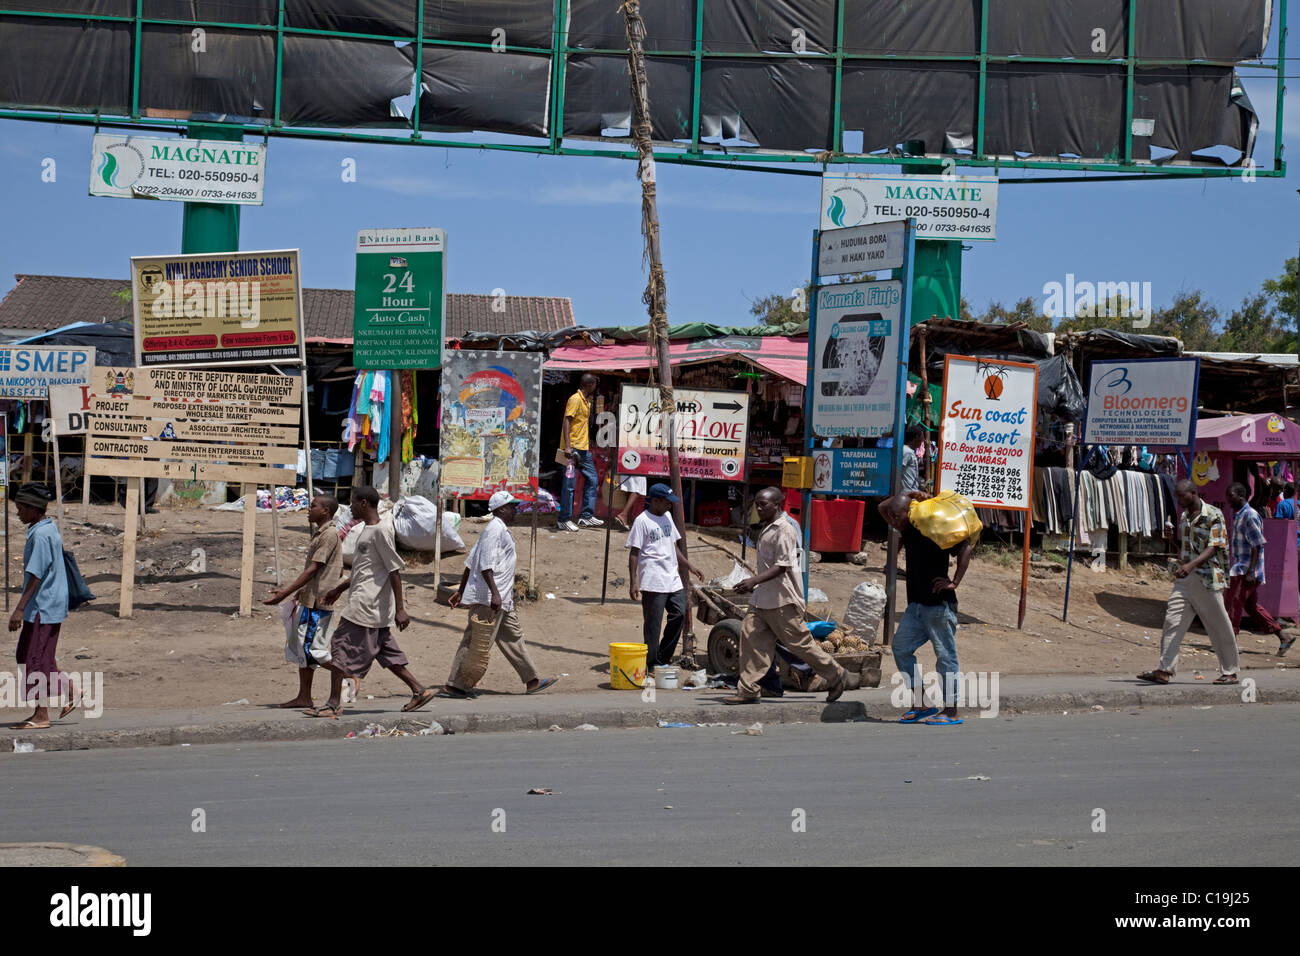 Afrikaner, die vorbei an Werbung Bill Bretter Werbetafeln in lässigen Straßenszene Mombasa Kenia Stockfoto